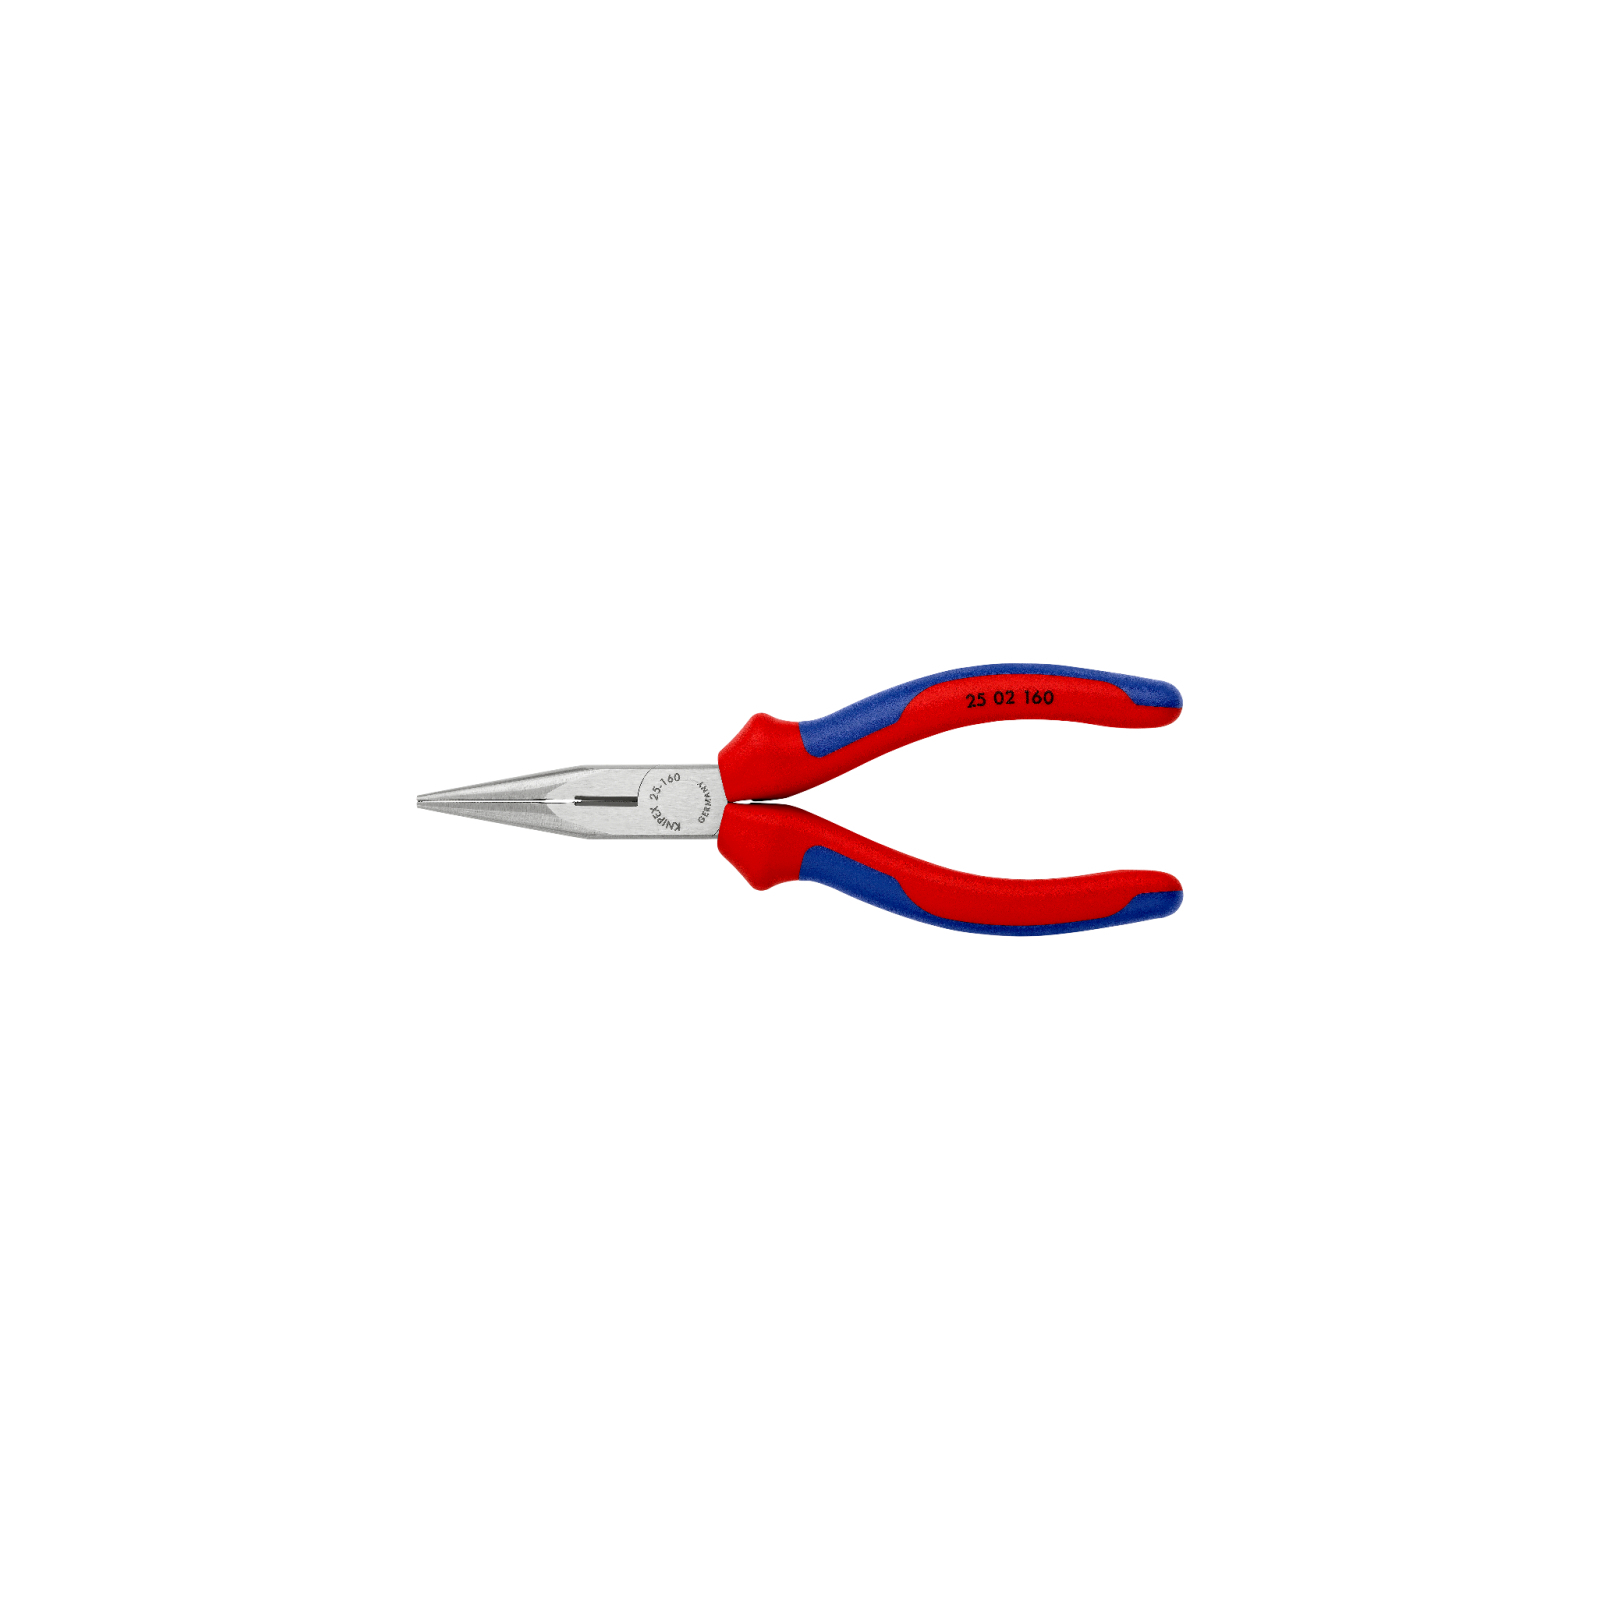 Плоскогубцы KNIPEX круглогубцы с режущими кромками (25 02 160) изображение 3